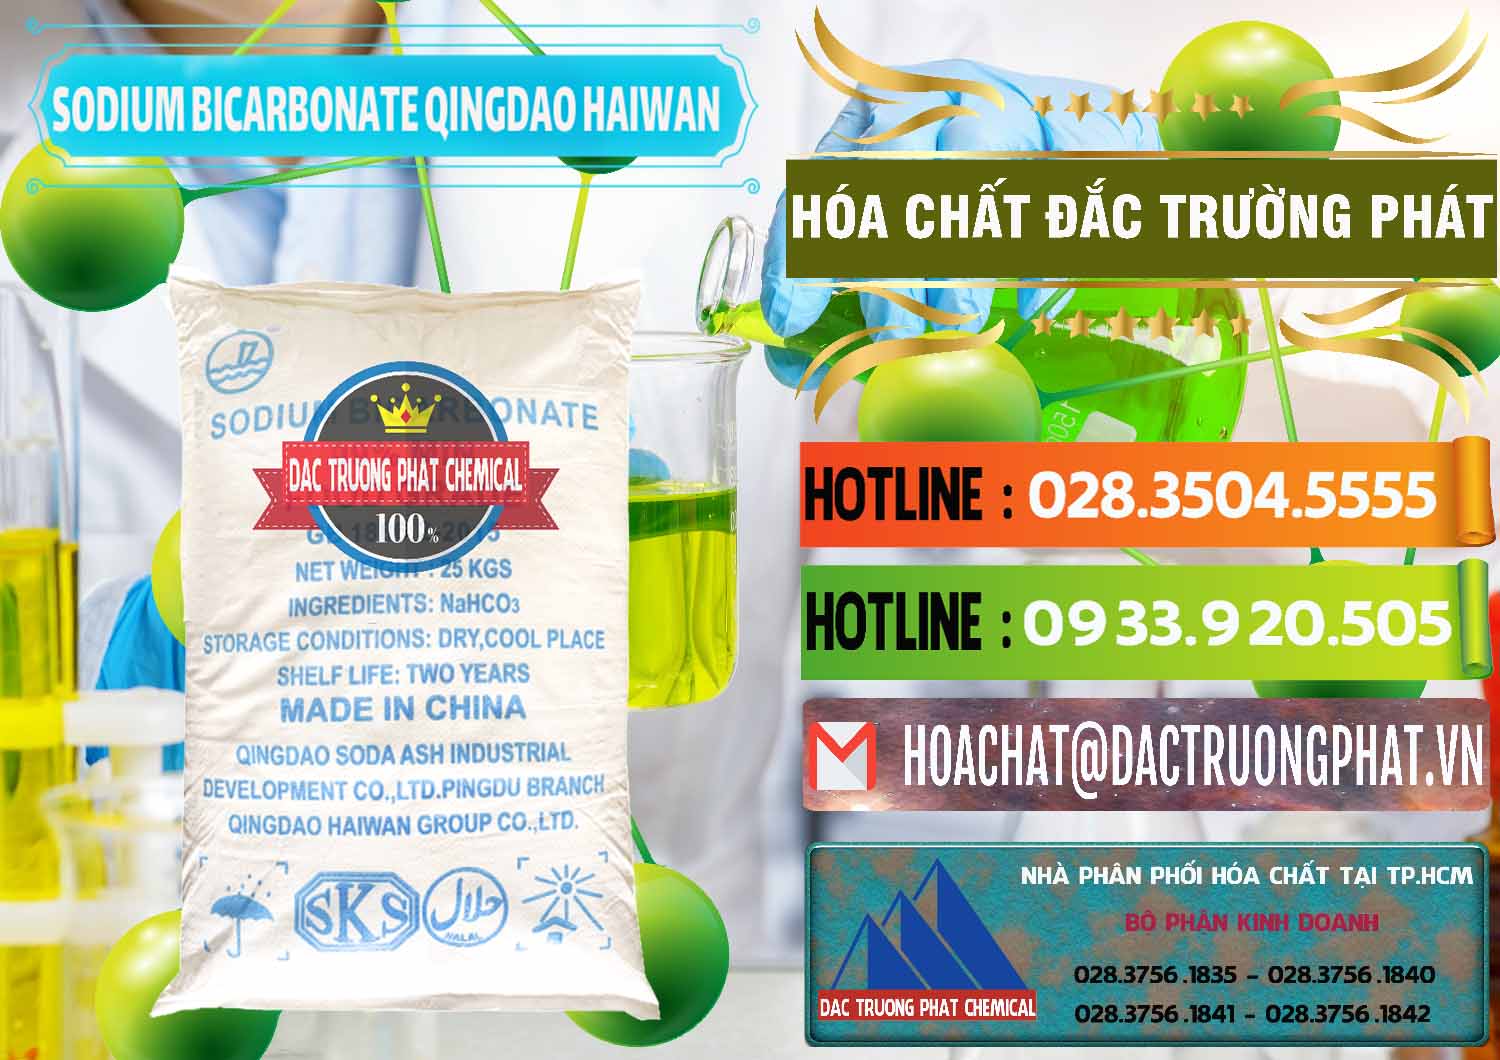 Chuyên nhập khẩu & bán Sodium Bicarbonate – Bicar NaHCO3 Food Grade Qingdao Haiwan Trung Quốc China - 0258 - Công ty bán và phân phối hóa chất tại TP.HCM - cungcaphoachat.com.vn